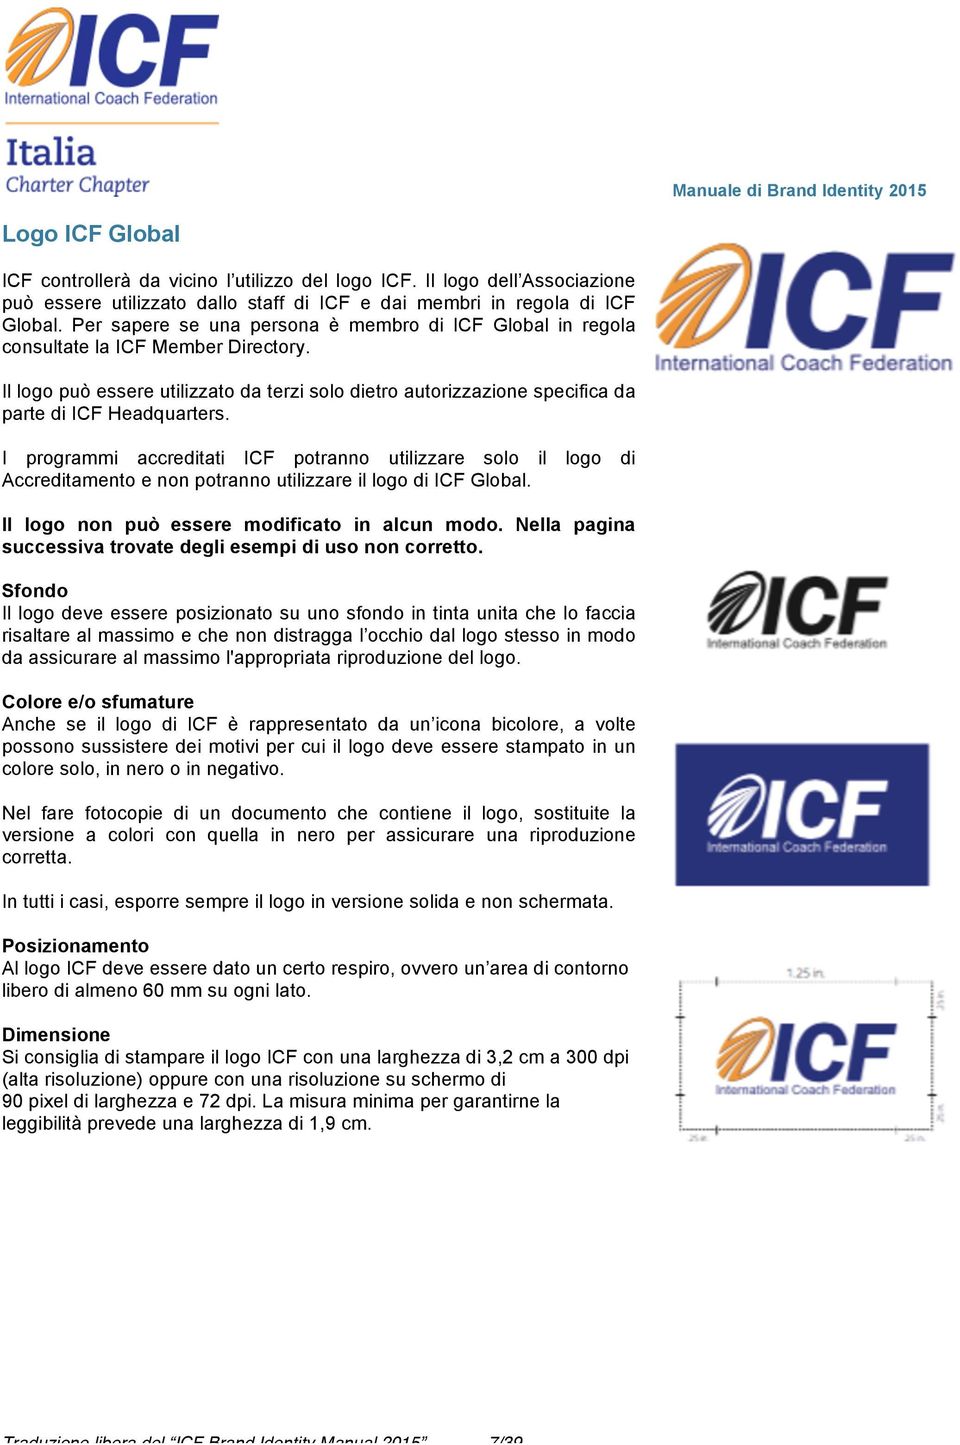 I programmi accreditati ICF potranno utilizzare solo il logo di Accreditamento e non potranno utilizzare il logo di ICF Global. Il logo non può essere modificato in alcun modo.